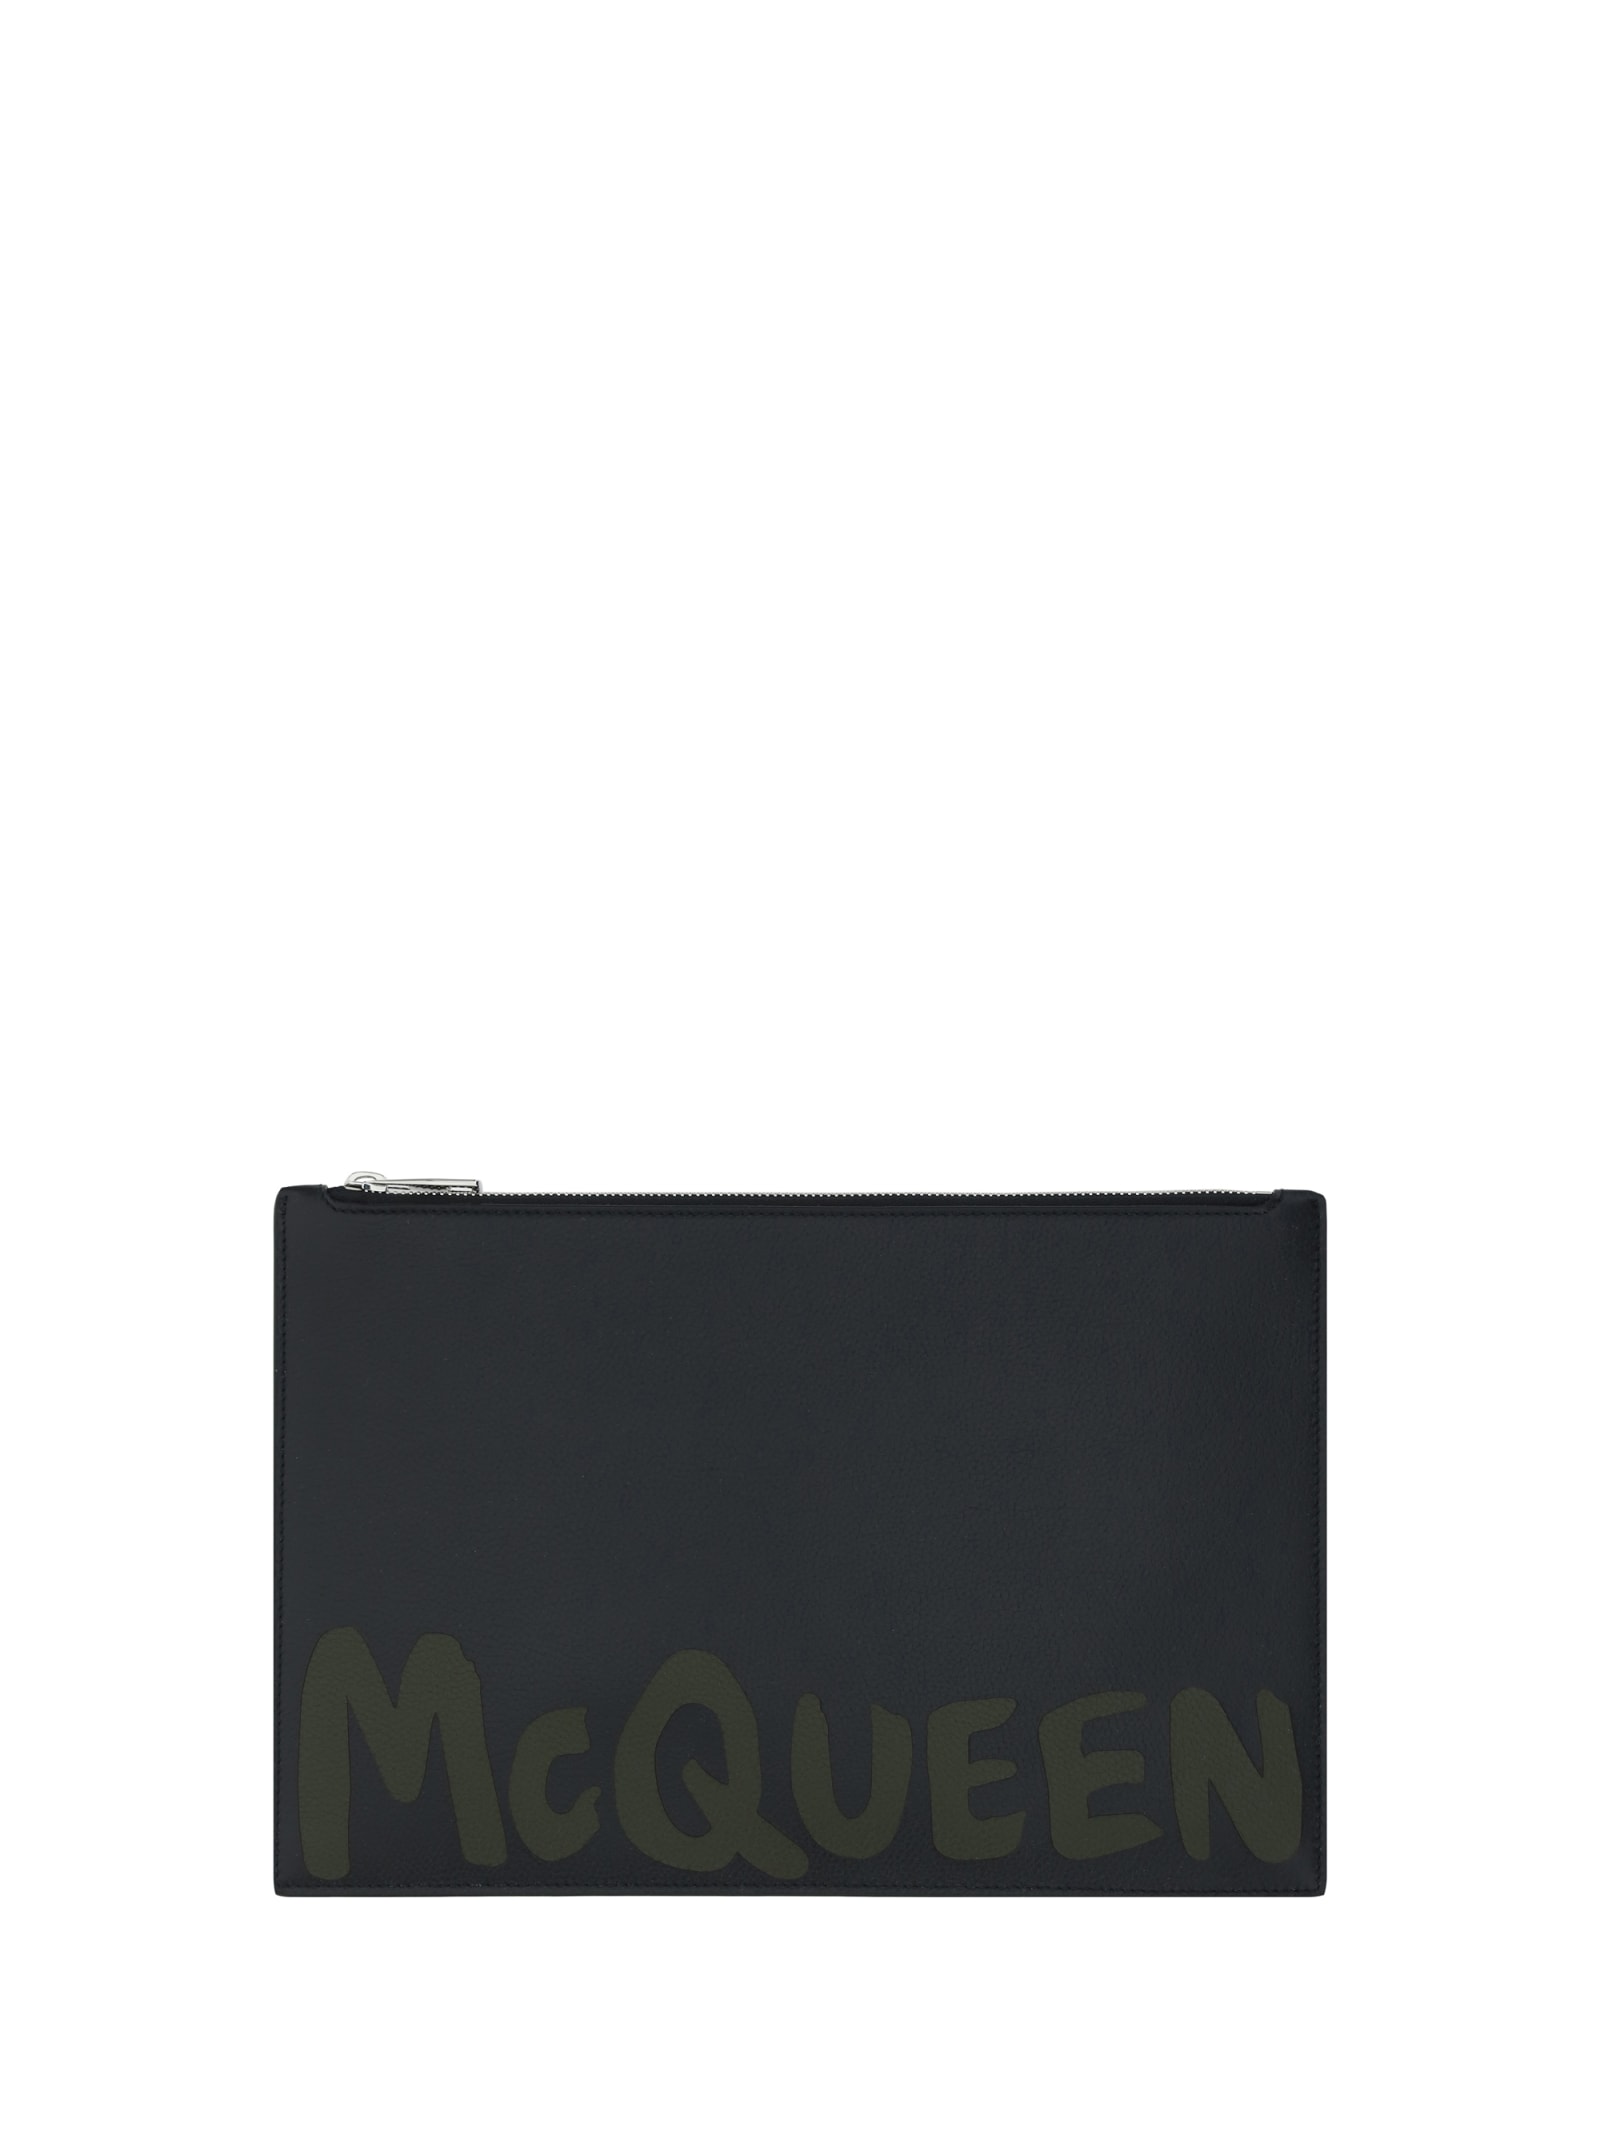 Shop Alexander Mcqueen Beauty Case In Black/khaki